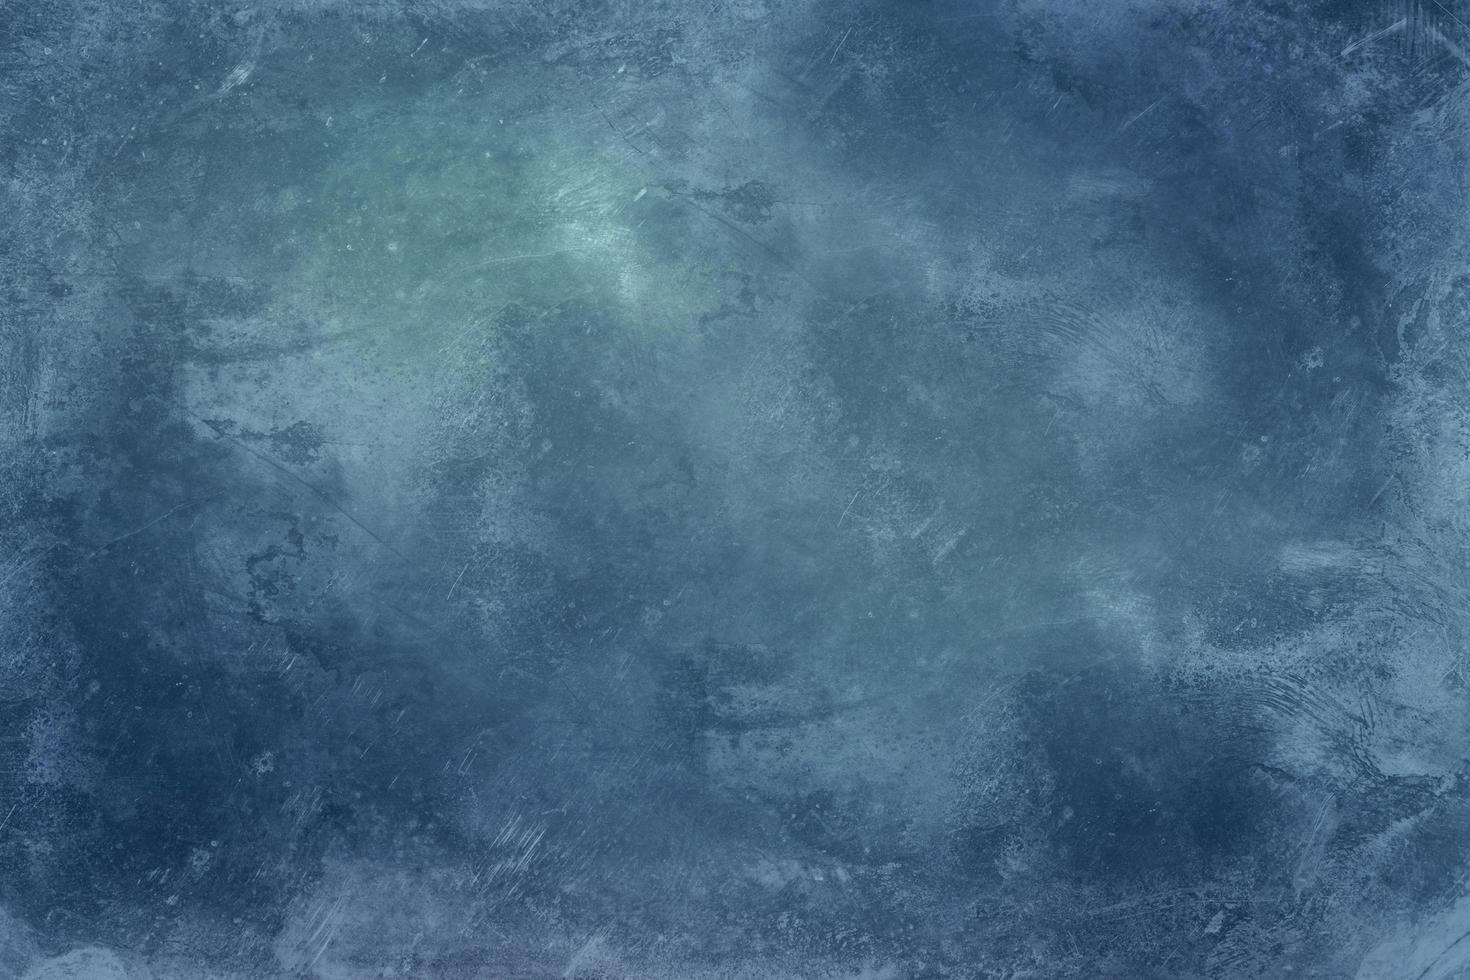 fond de glace froide bleue avec des rayures et des motifs, texture de l'eau gelée photo